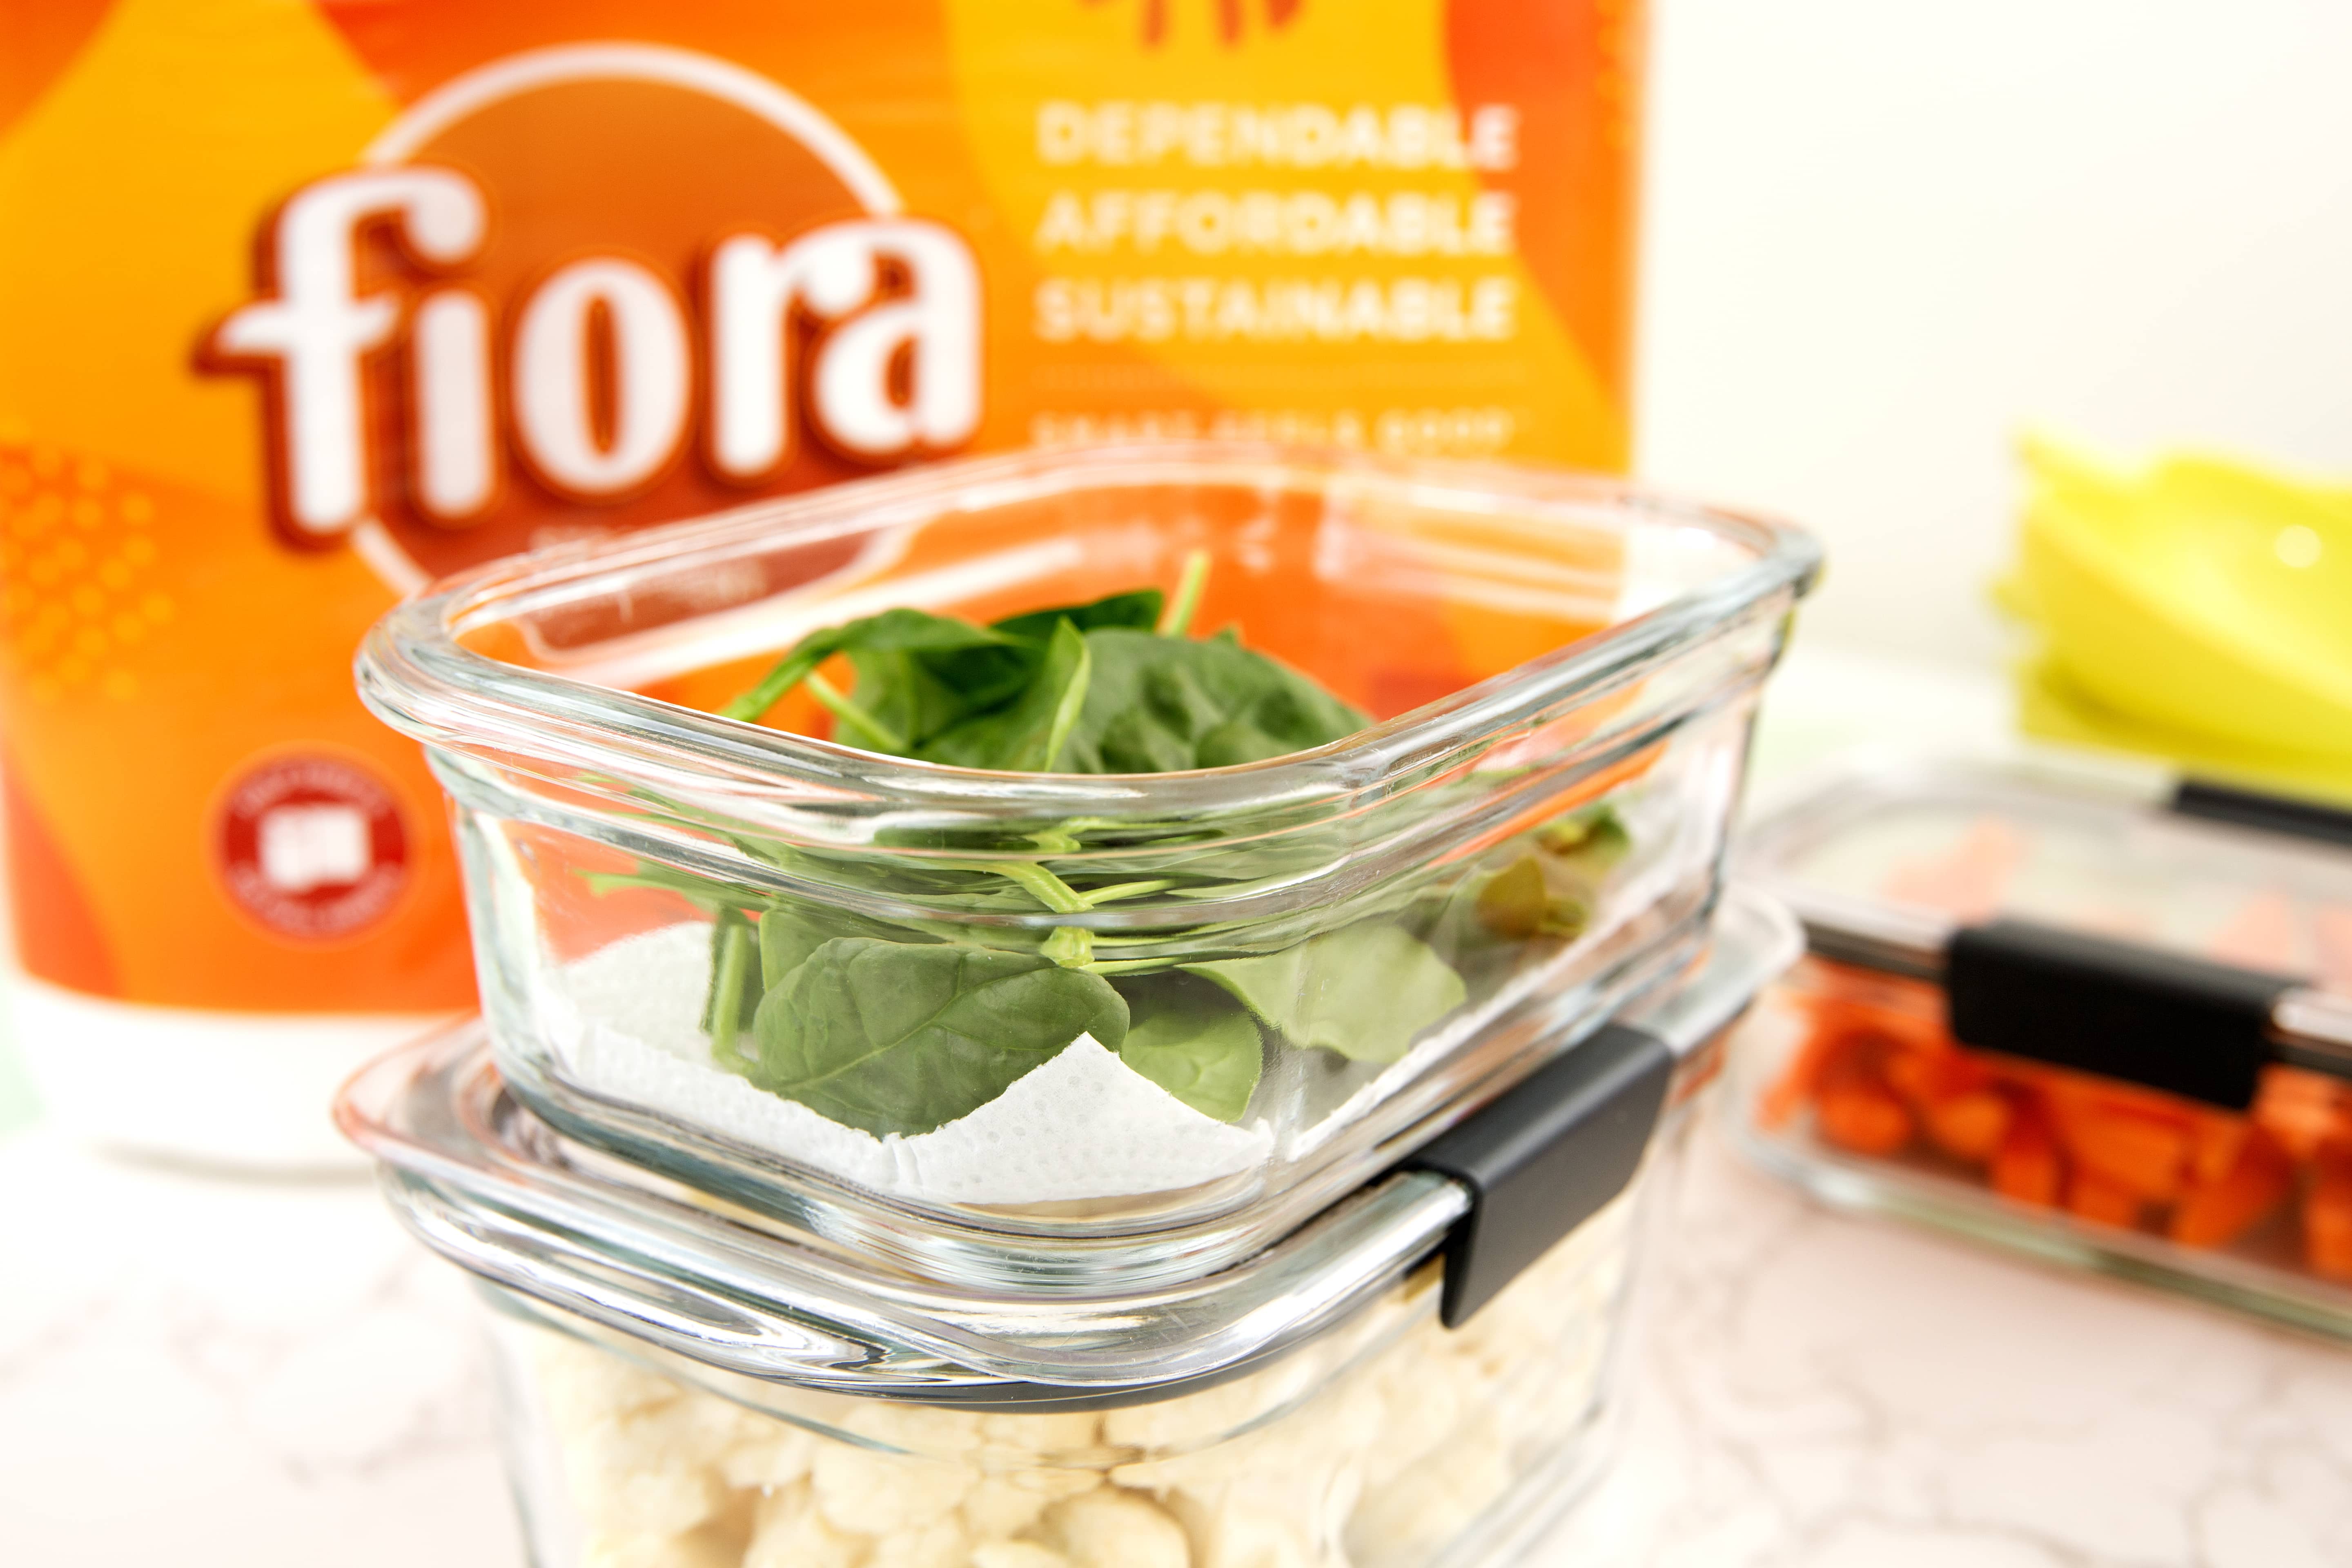 Fiora container foods